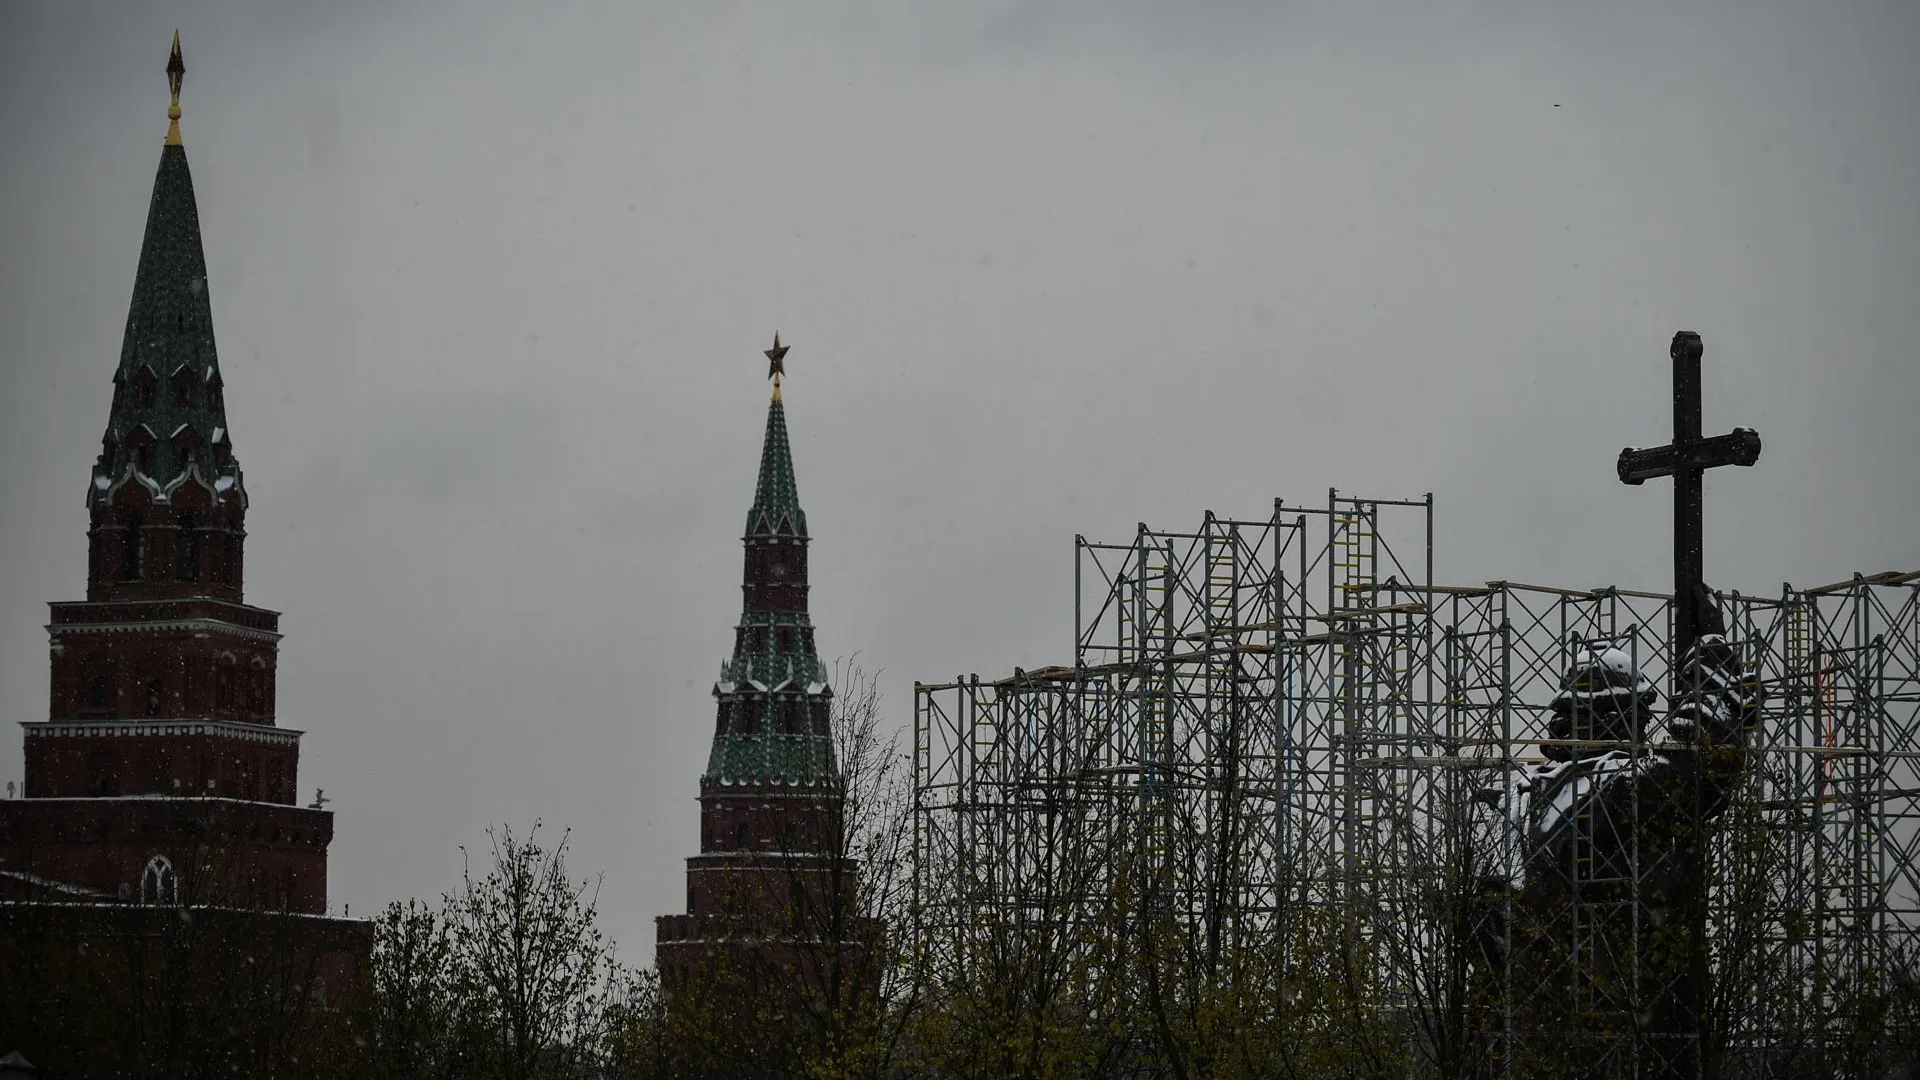 Памятник князю Владимиру возвысился над Кремлем в Москве